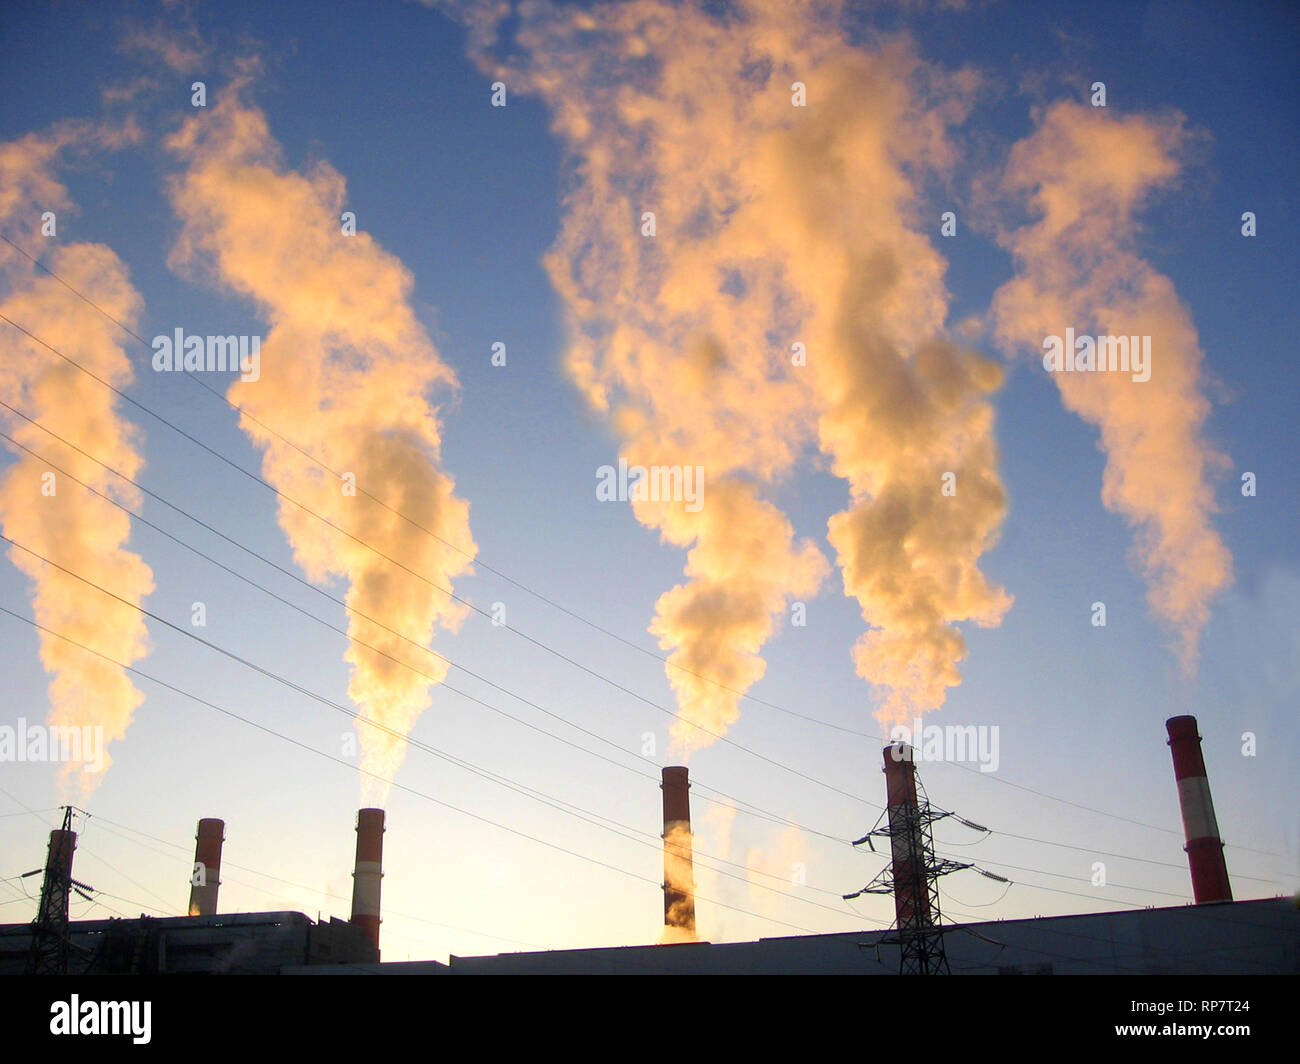 Les cheminées d'usine diffuser de la fumée sur la production d'énergie thermique Banque D'Images